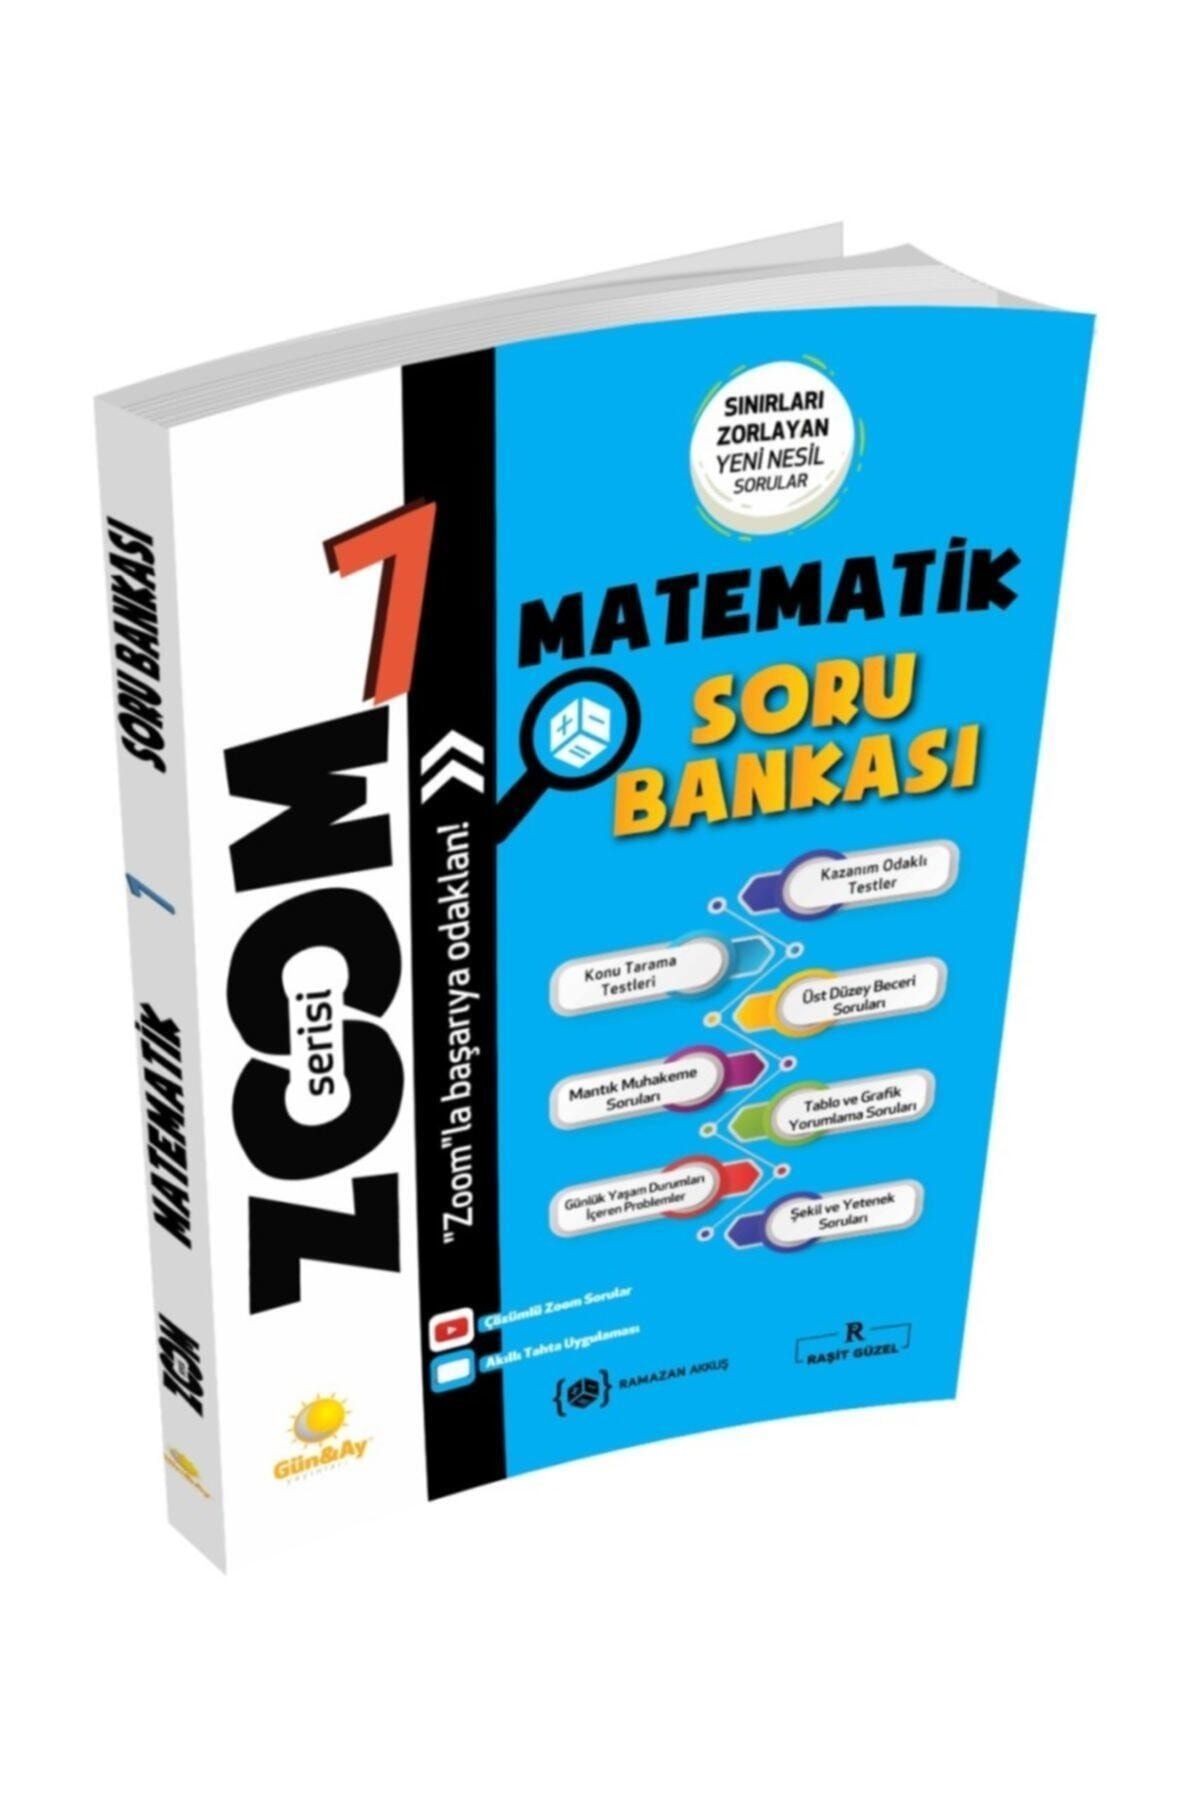 Gün&Ay Yayınları Yayınları Zoom Serisi Matematik 7. Sınıf Soru Bankası